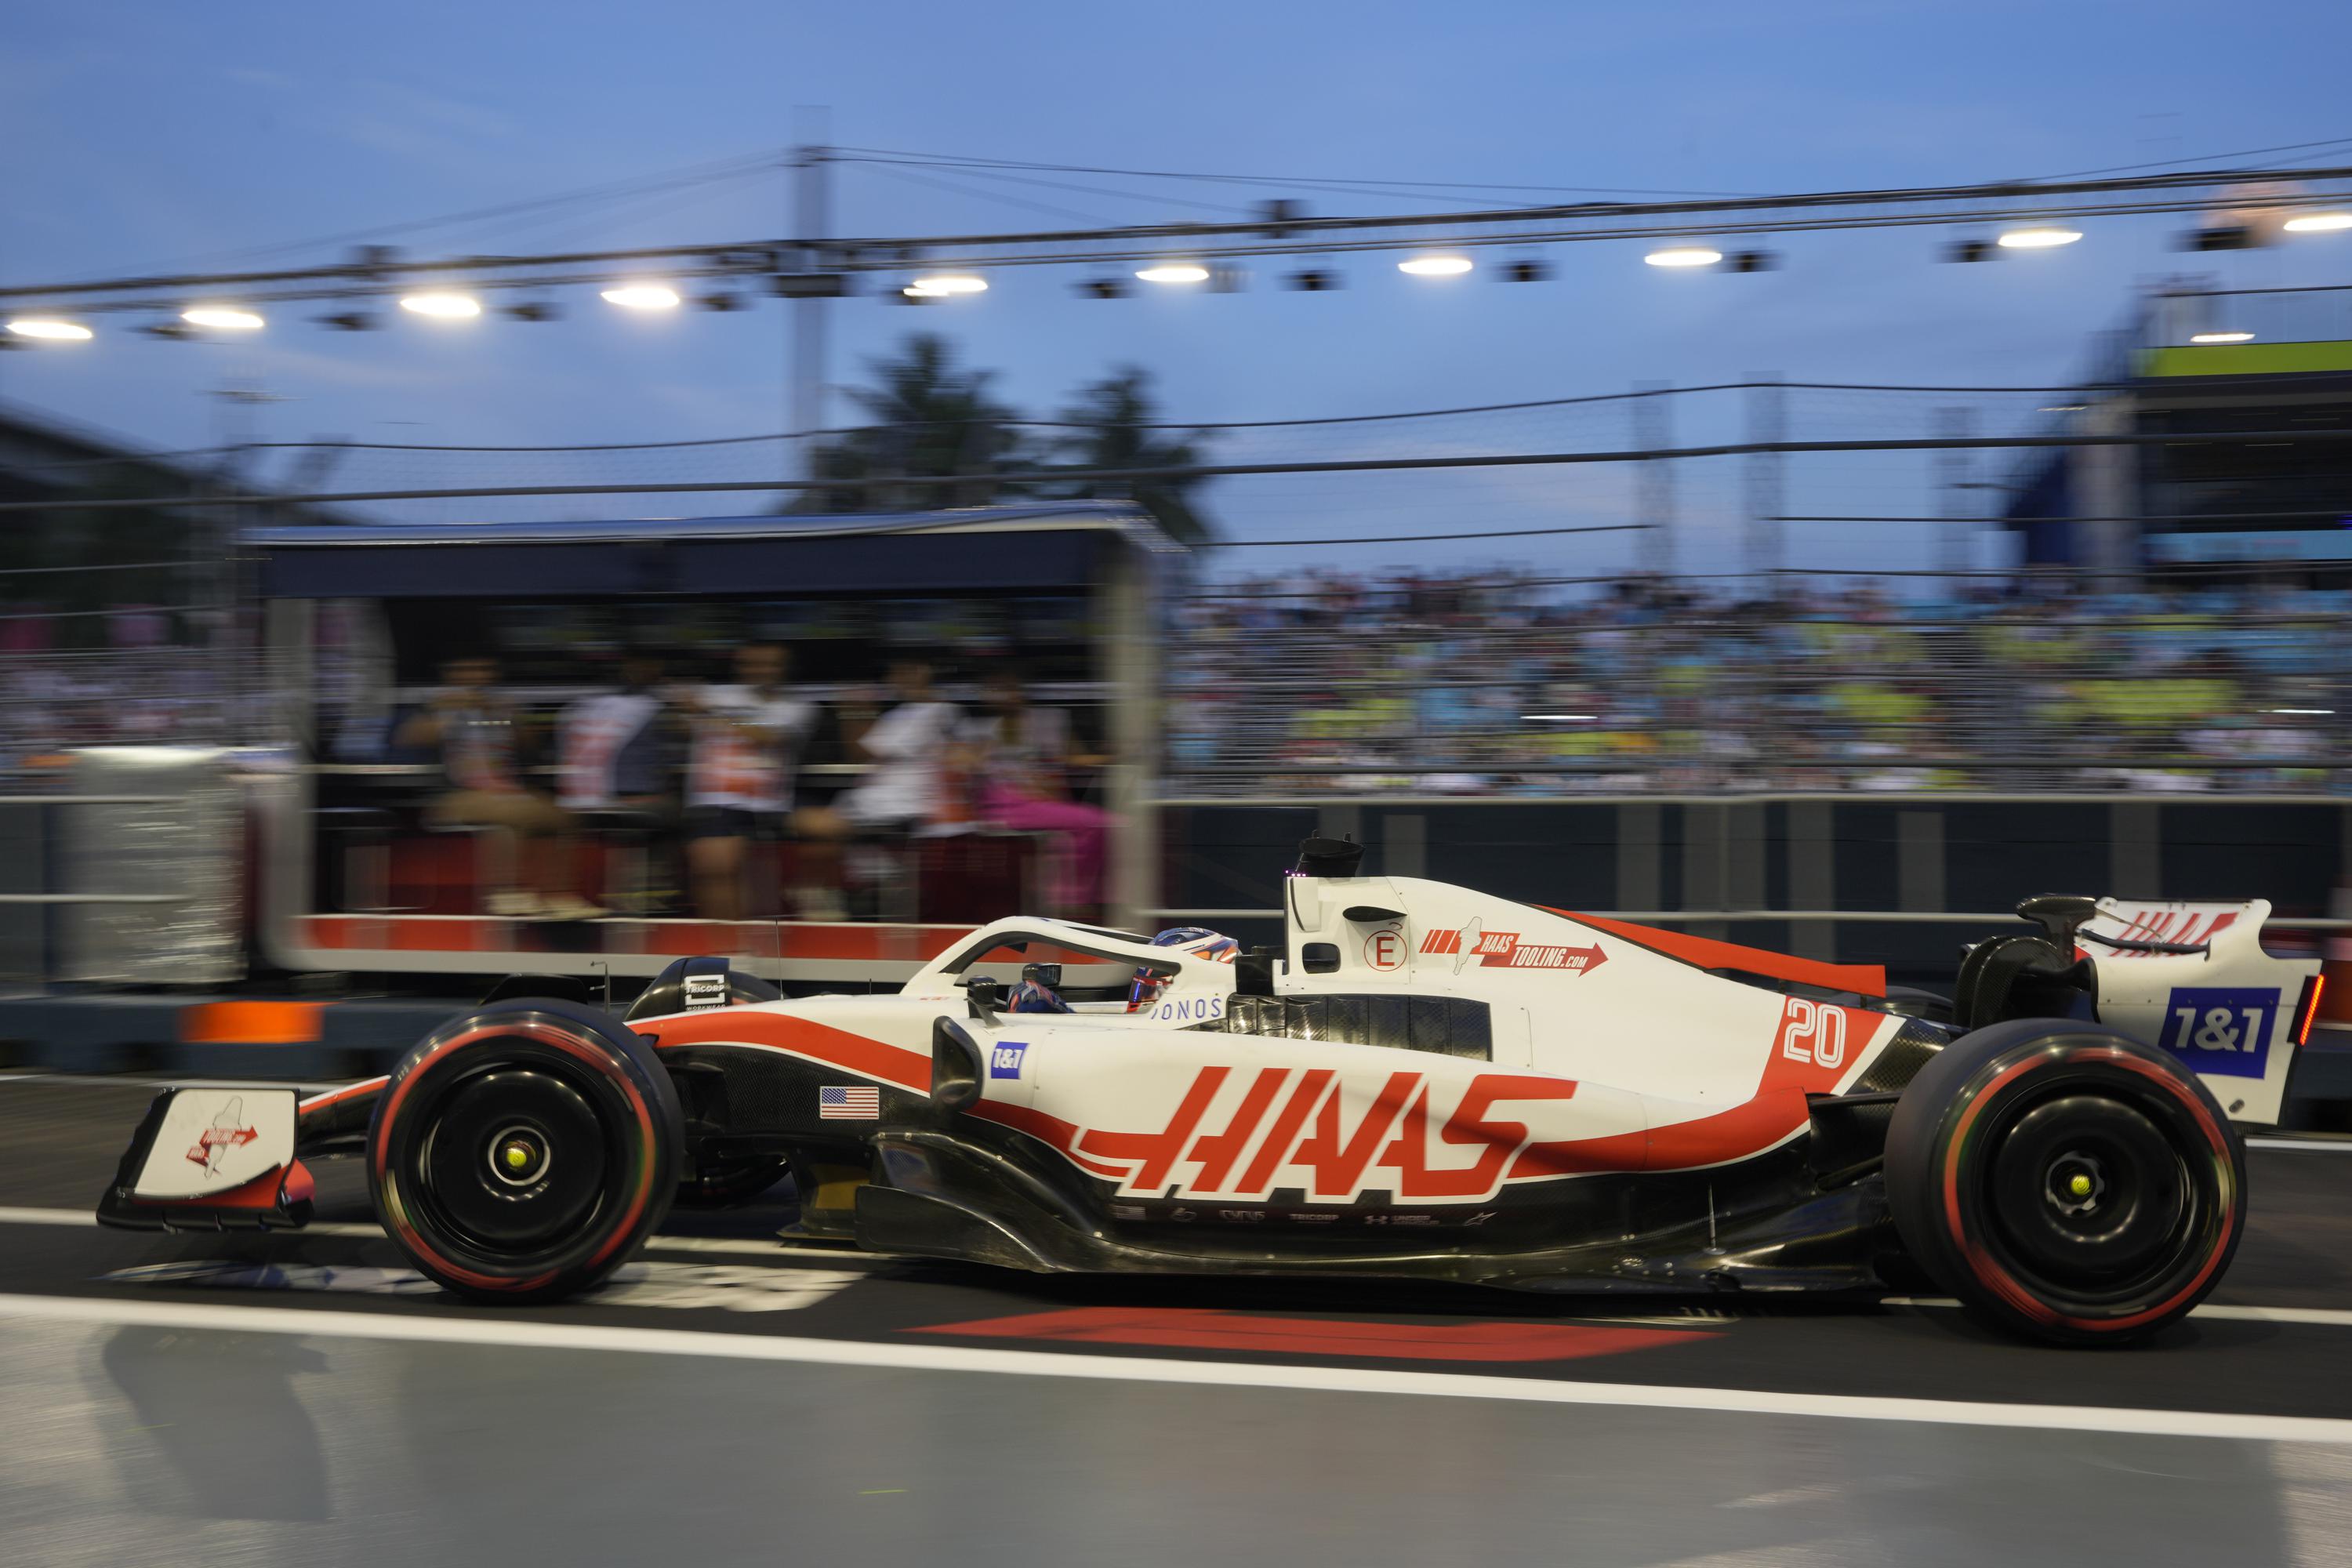 Haas F1 ожидает, что MoneyGram подпишет 3-летнее соглашение о королевском спонсорстве